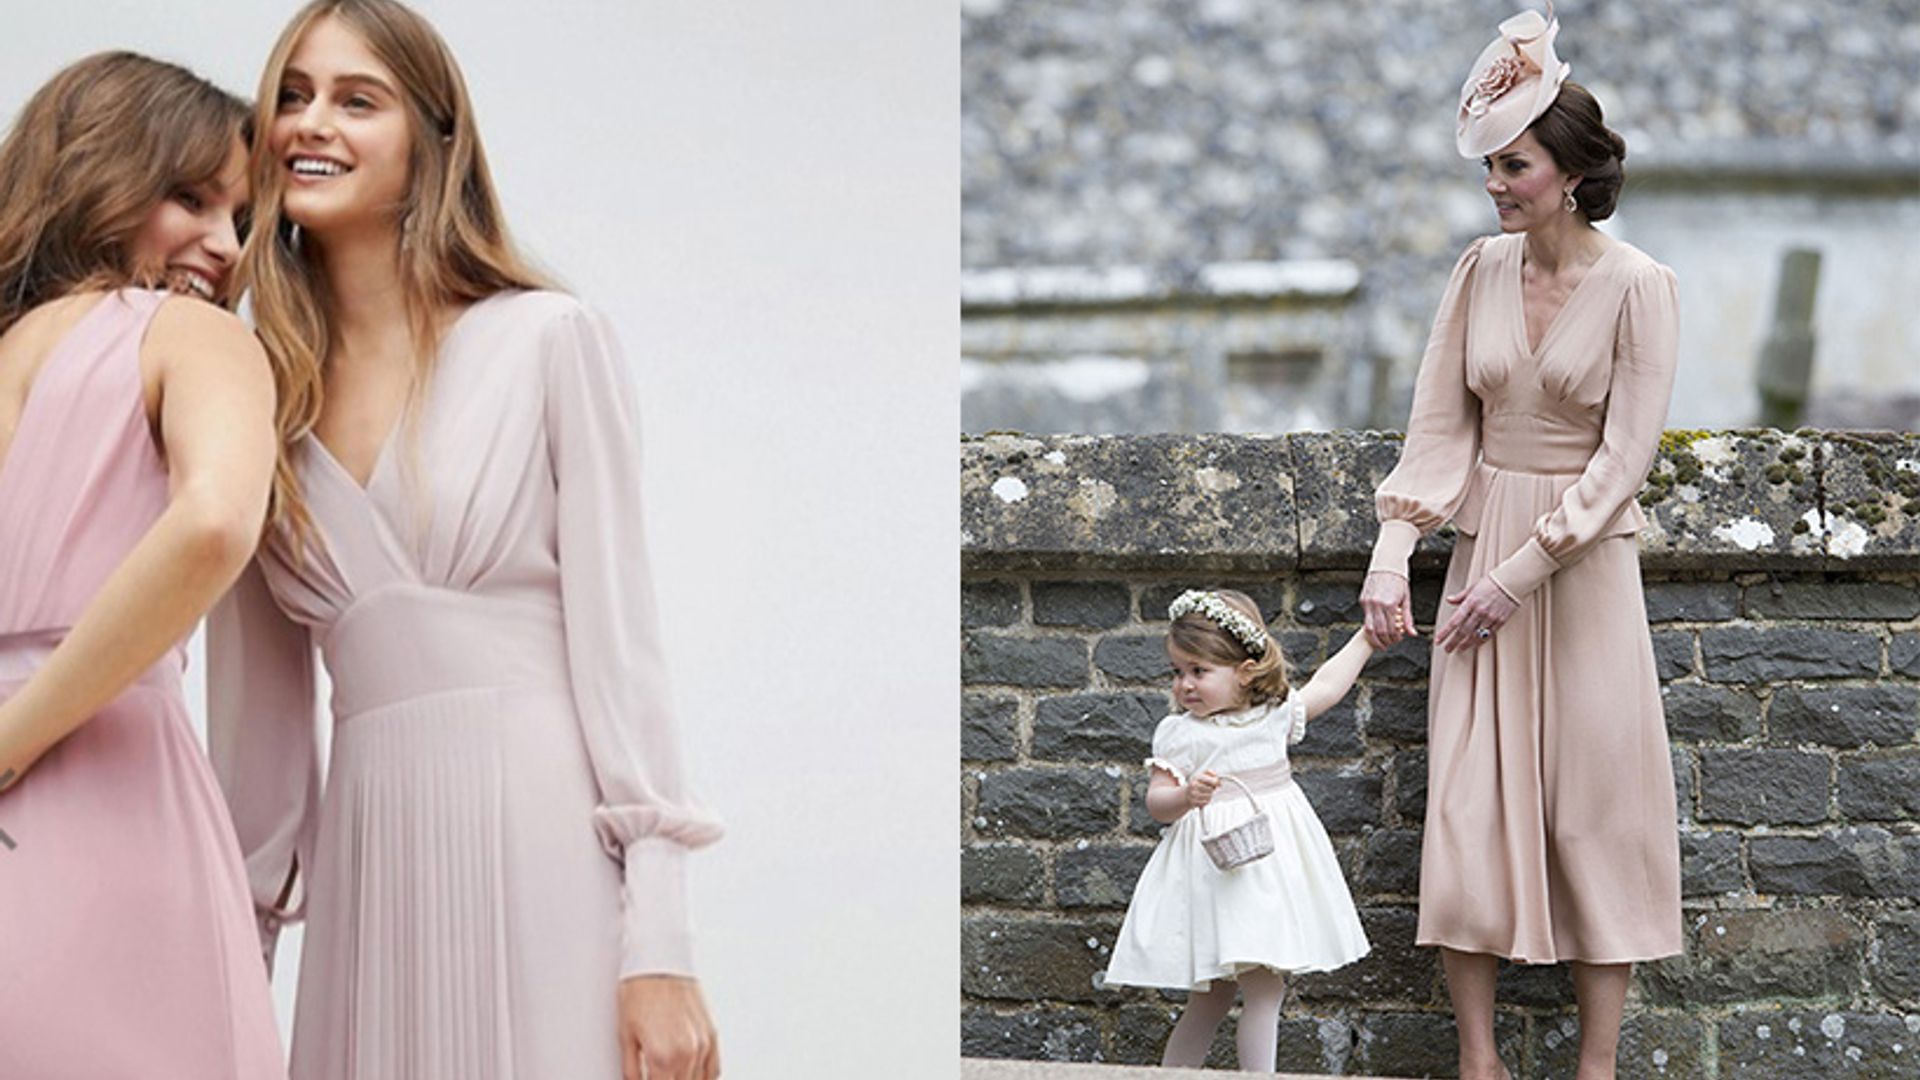  ASOS  design a dress  similar to Kate Middleton s pink dress  